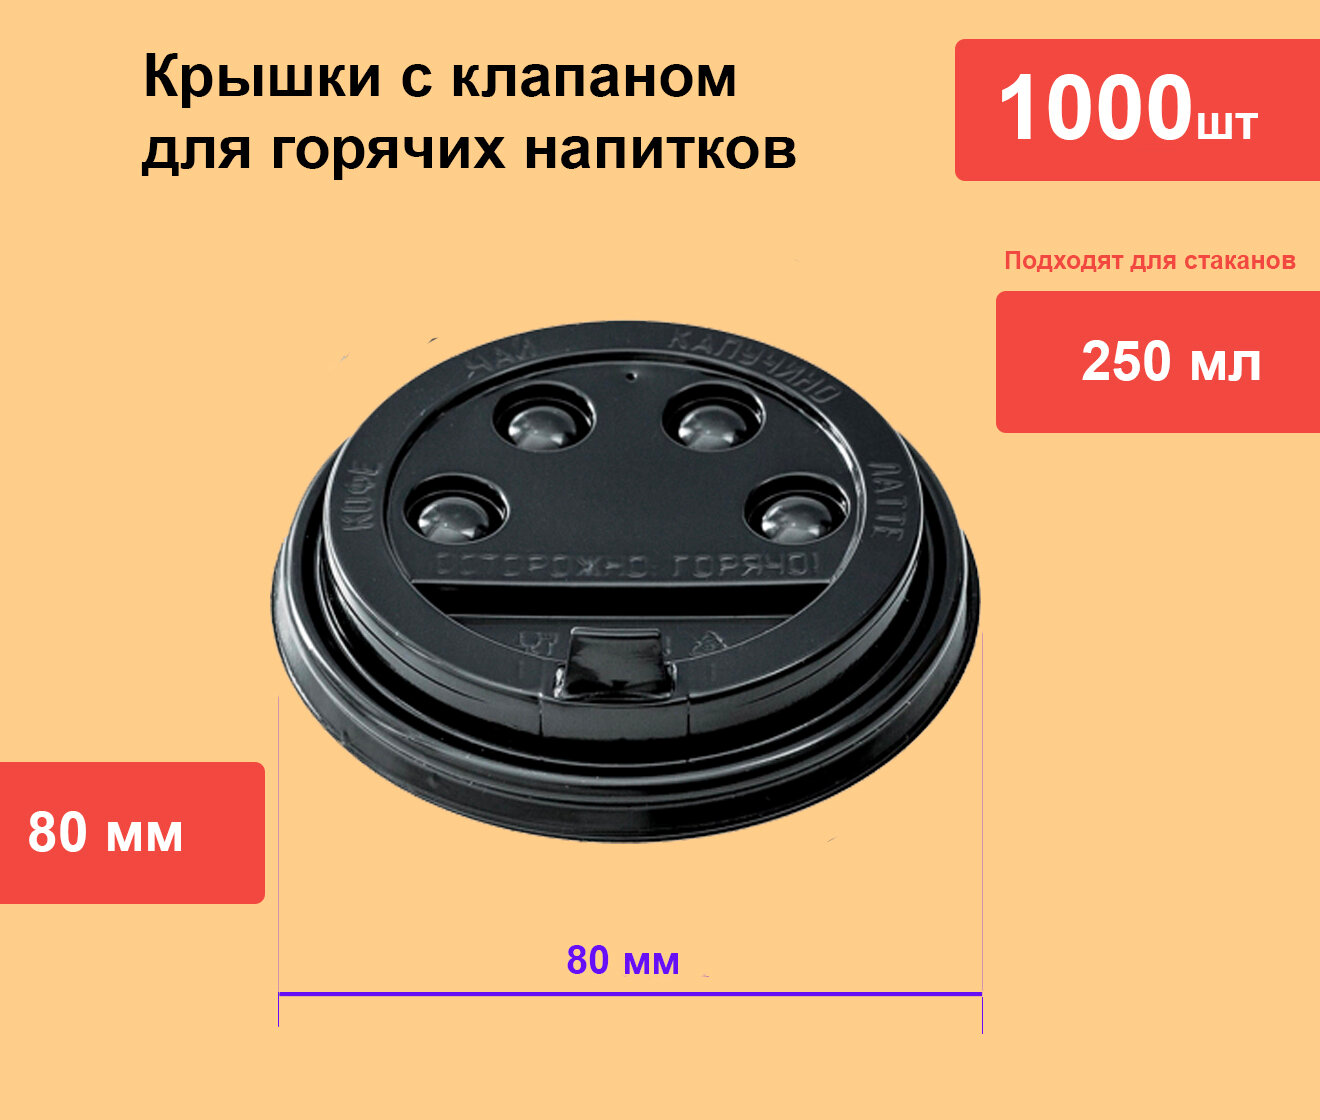 Крышка 80 мм для горячих напитков для чая кофе с клапаном черная, 1000 шт в упаковке